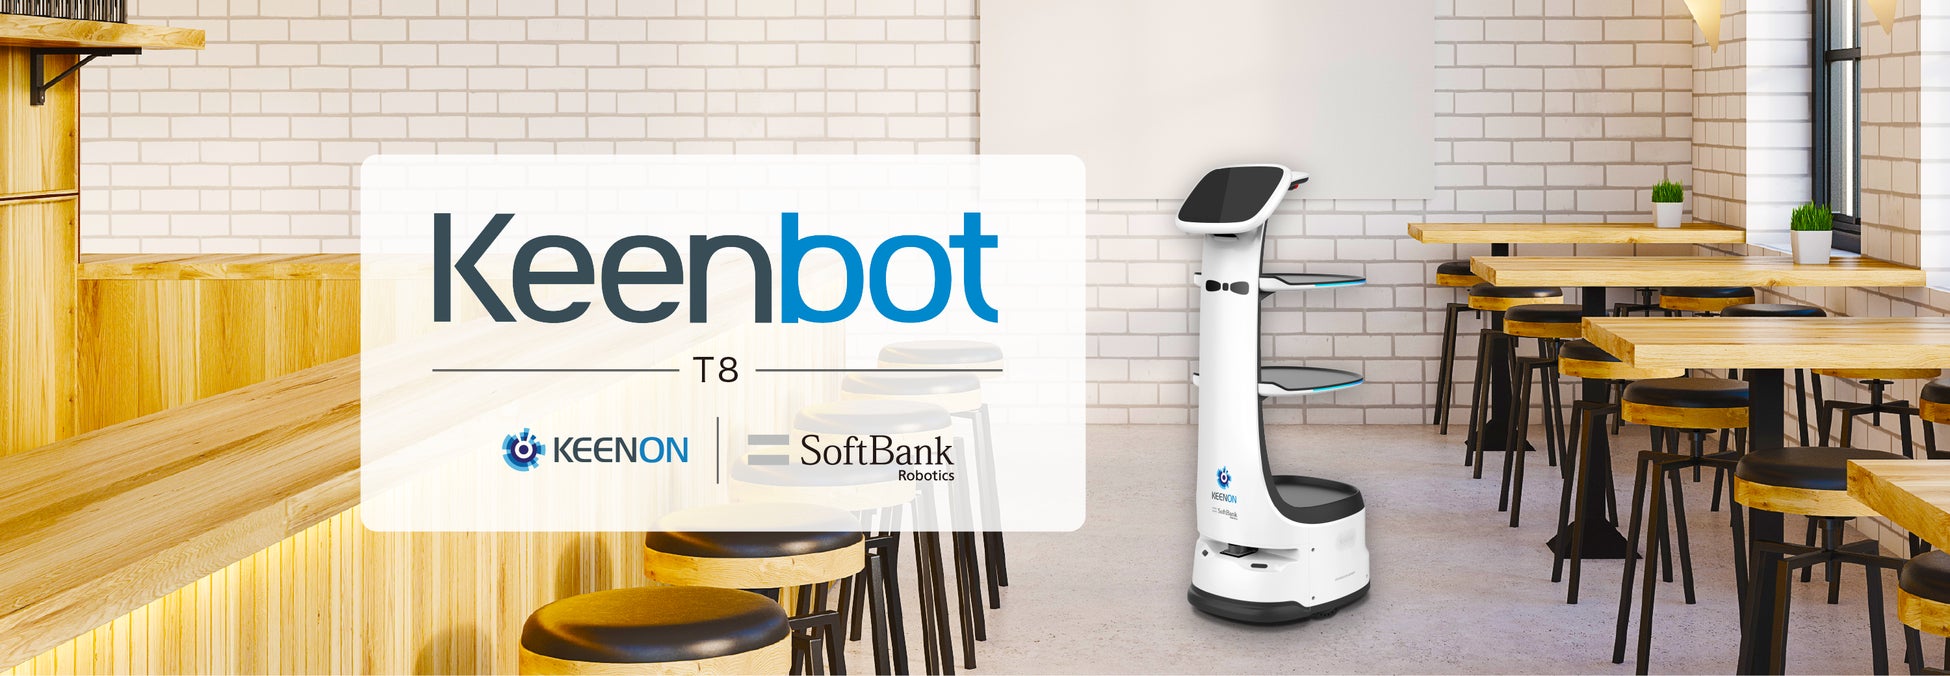 配膳・運搬ロボット「Keenbot T8」を本日より販売開始